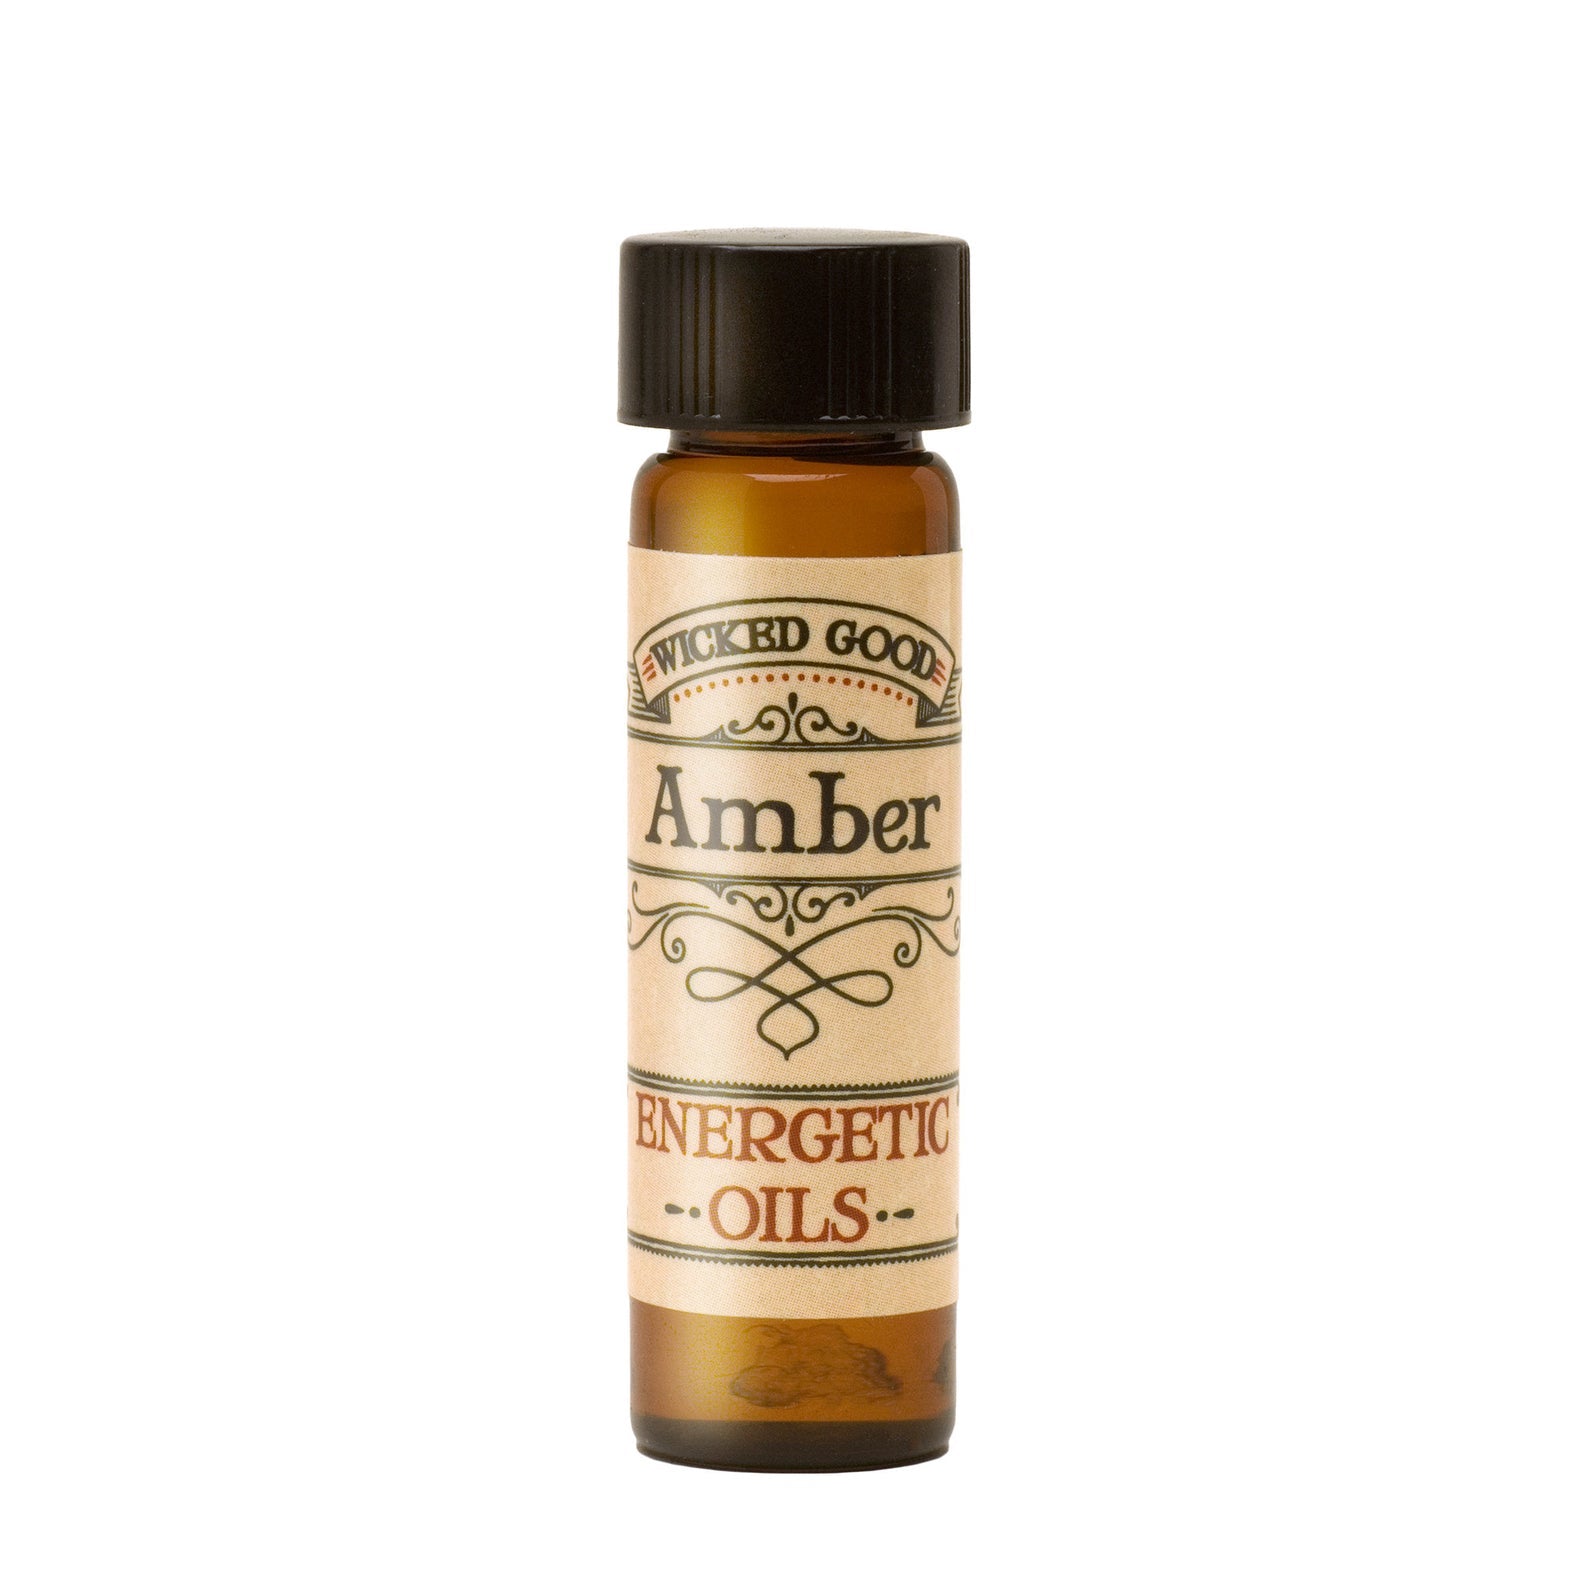 Amber Energetic Oil